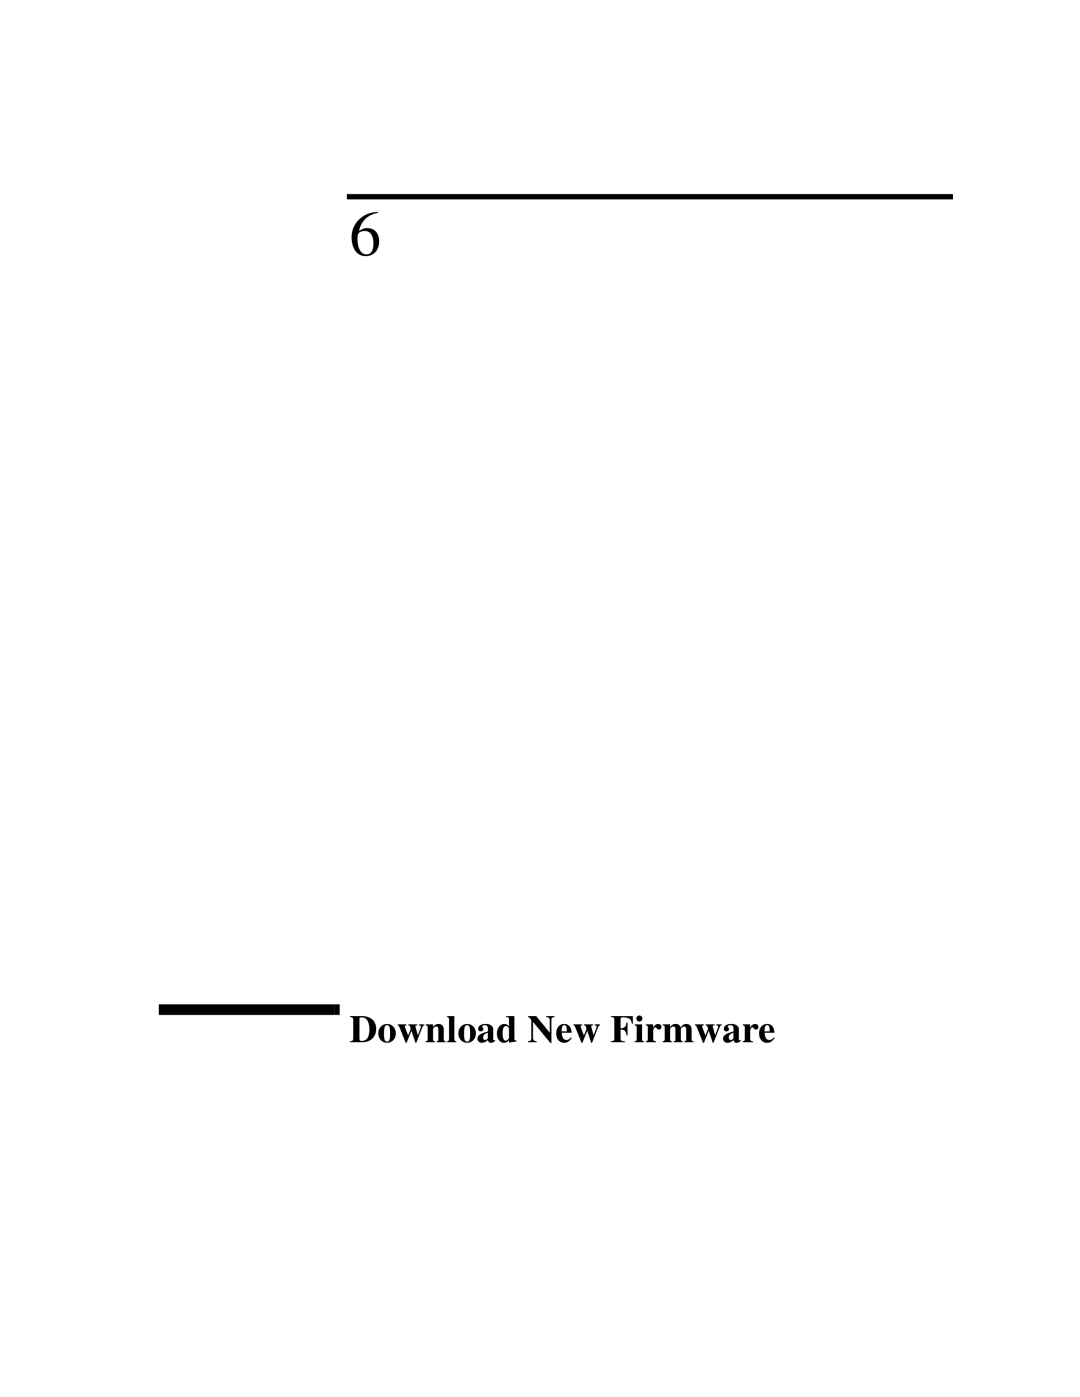 IBM 4986B LanProbe manual Download New Firmware 